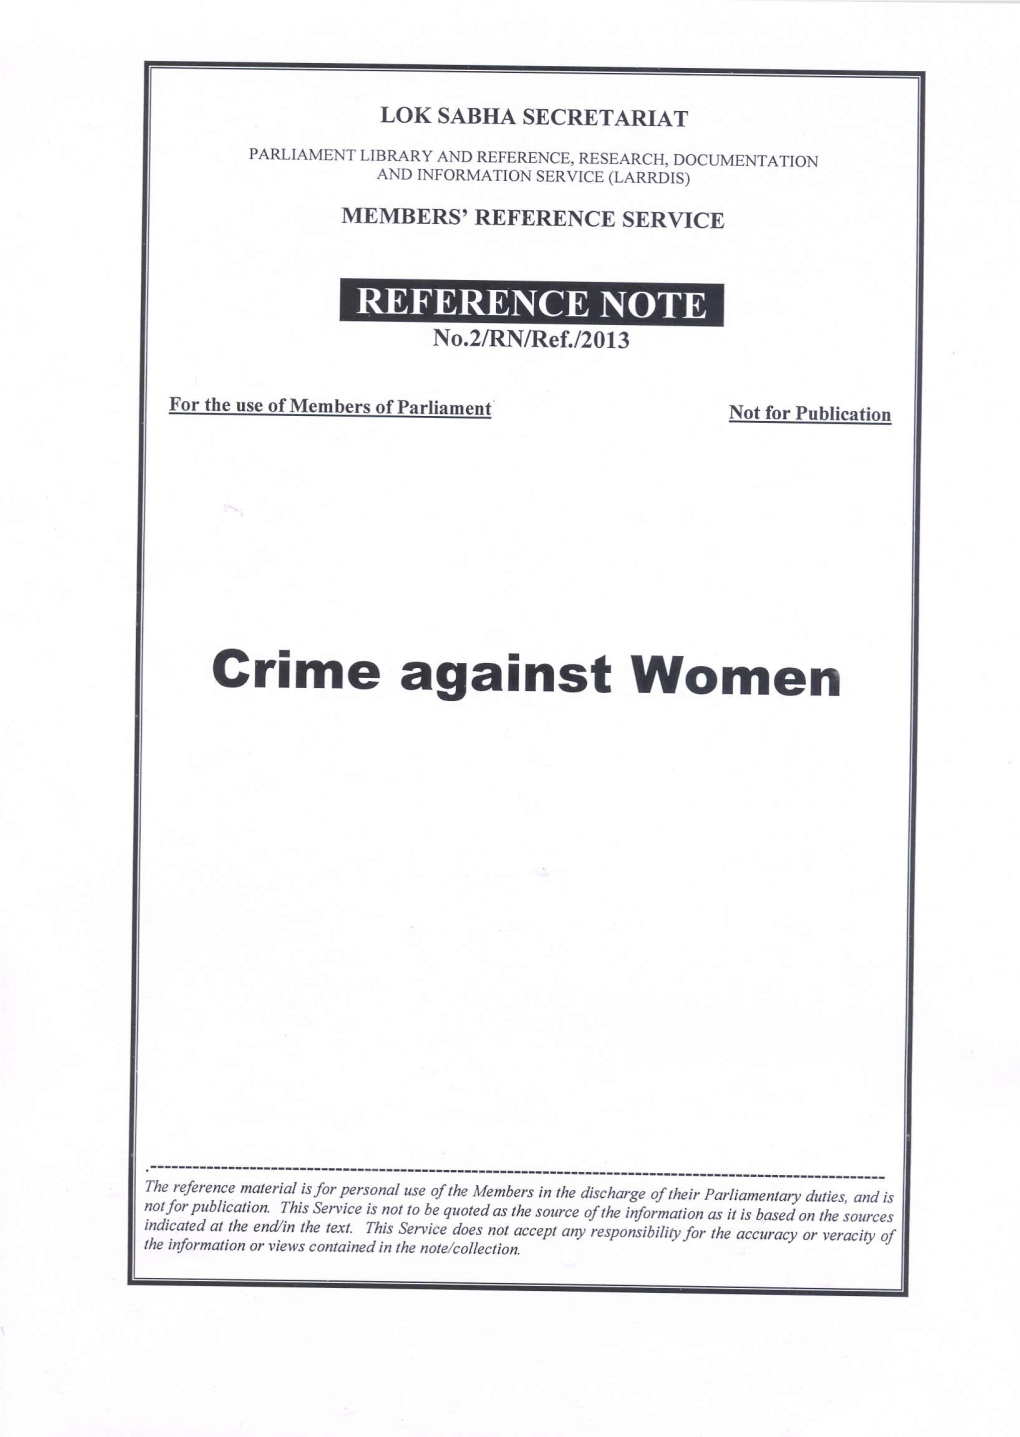 Crime Against Women 4